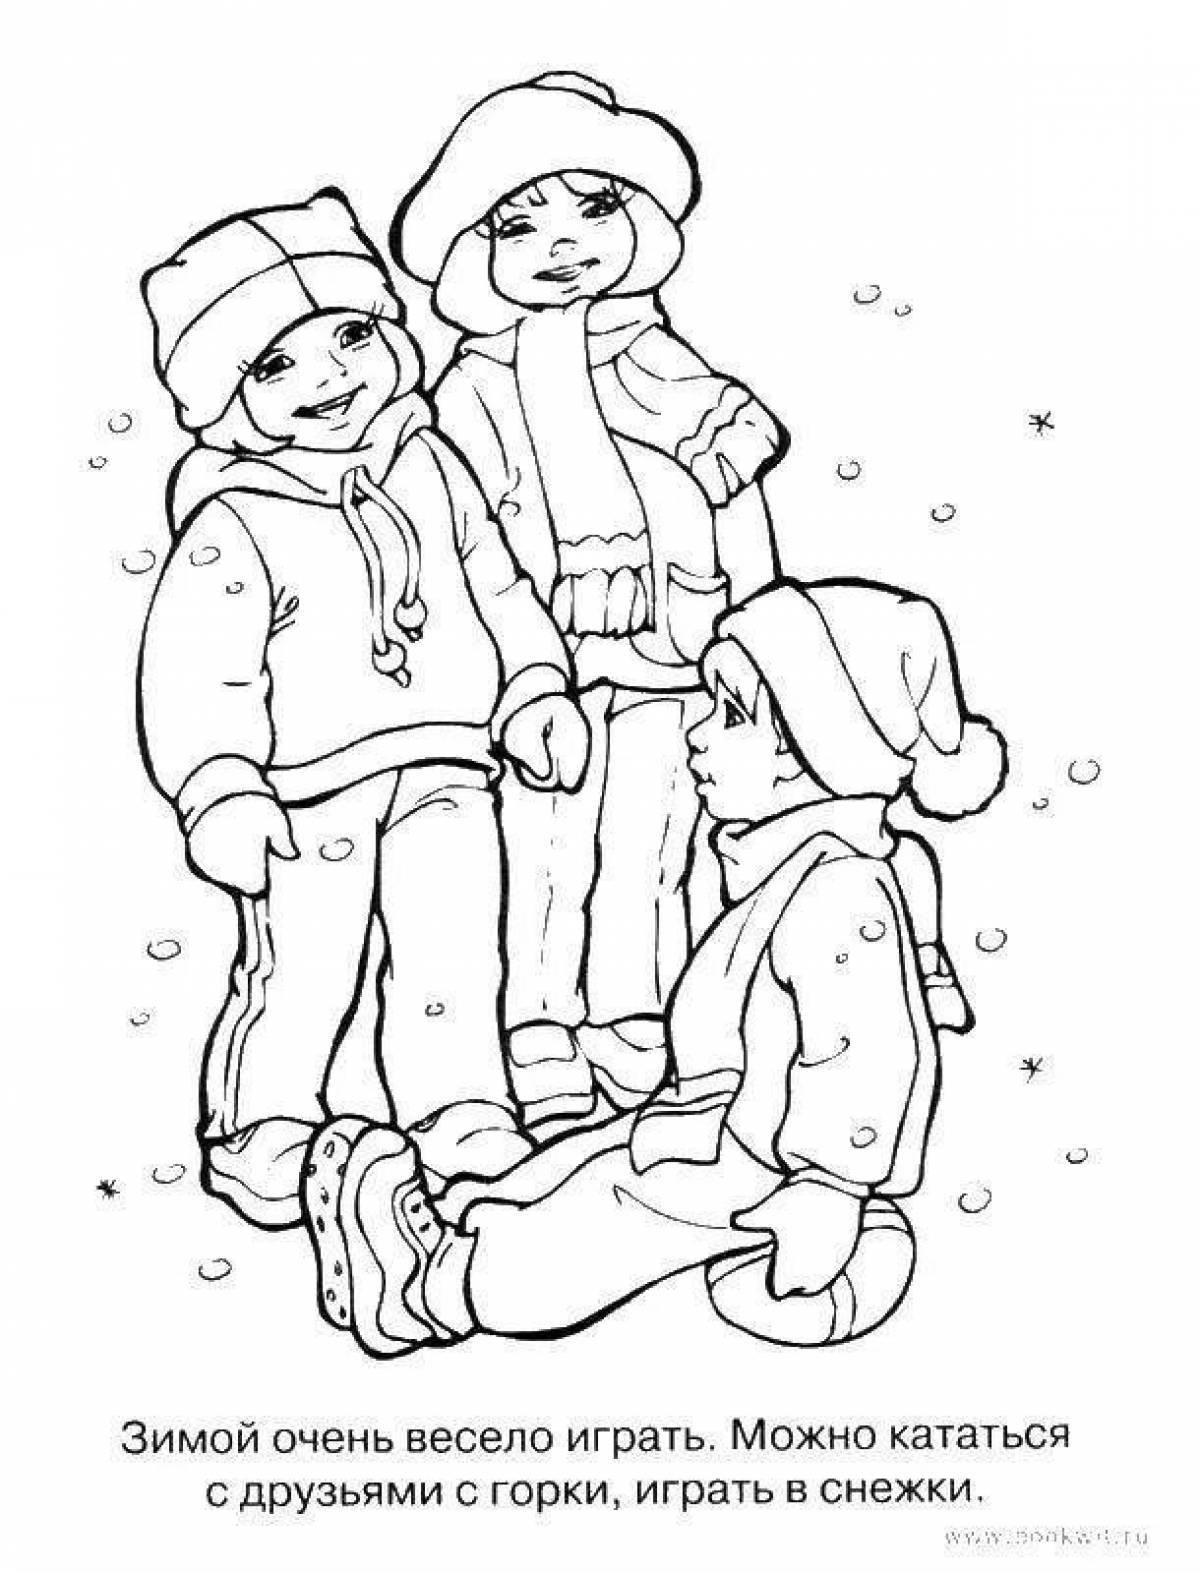 Милый ребенок в зимней одежде